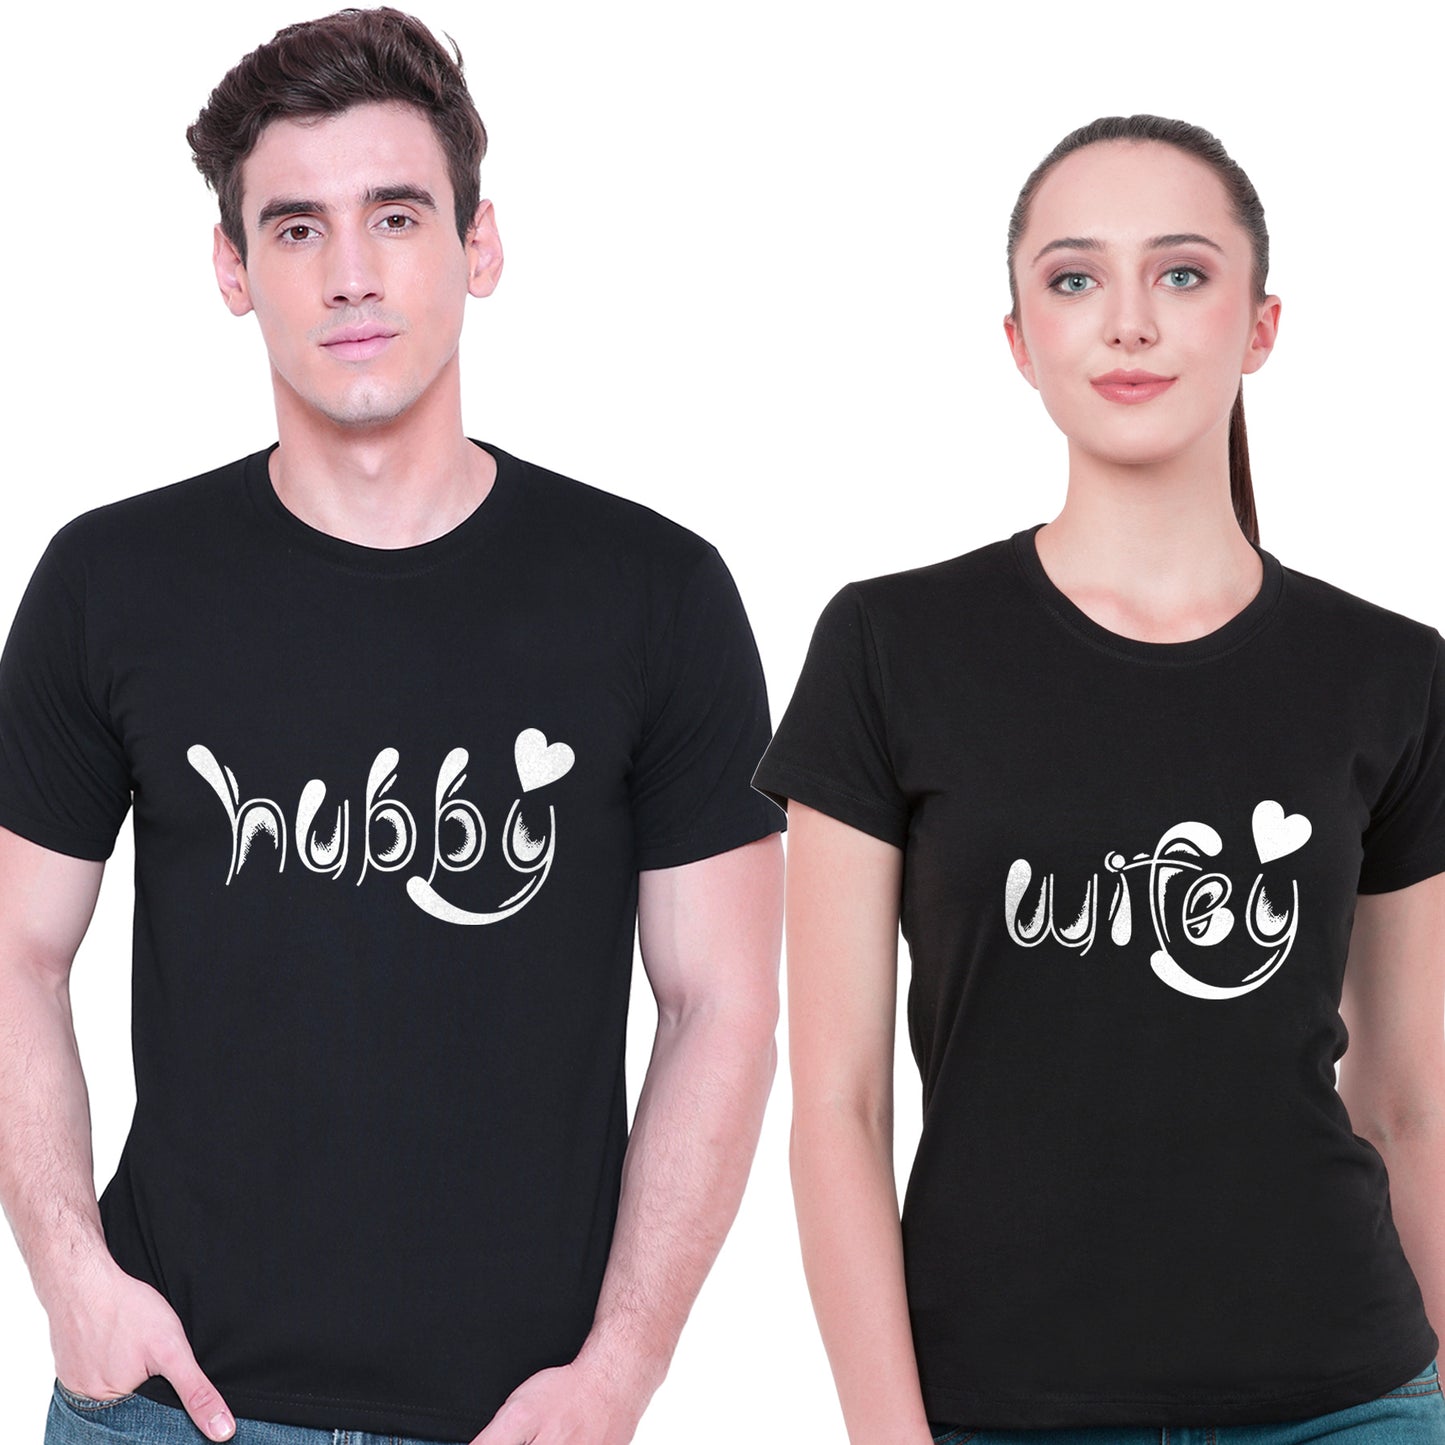 Hubby Wifey matching Couple T shirts- Black